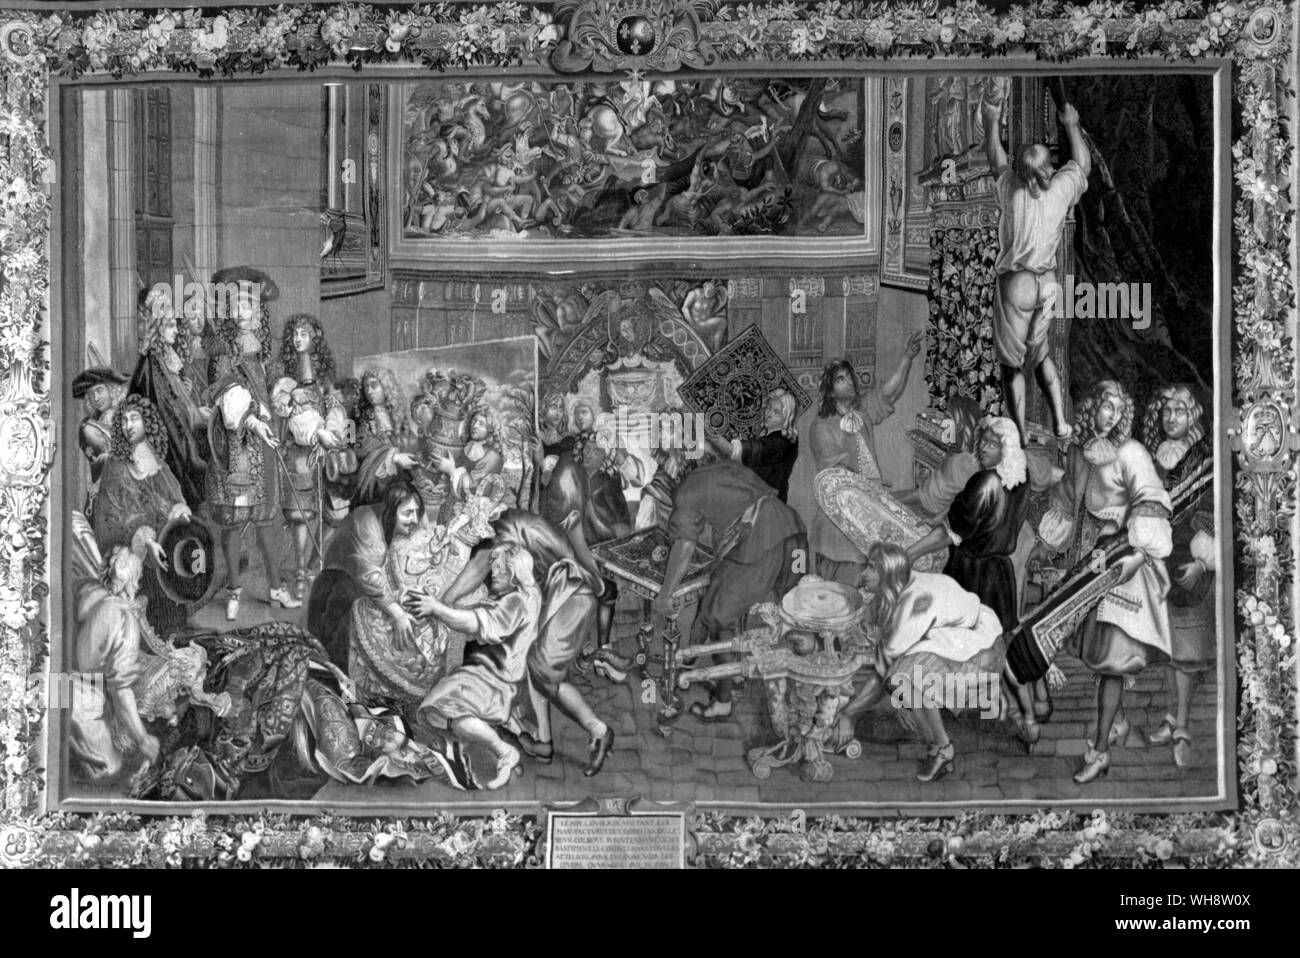 Louis XIV., der Sonnenkönig 1638-1715 König von Frankreich von 1643 Besuch der Gobelins Manufaktur vom 15. Oktober 1667, Tapisserie nach Charles Le Brun. Le Brun präsentiert die Handwerker zum König Stockfoto